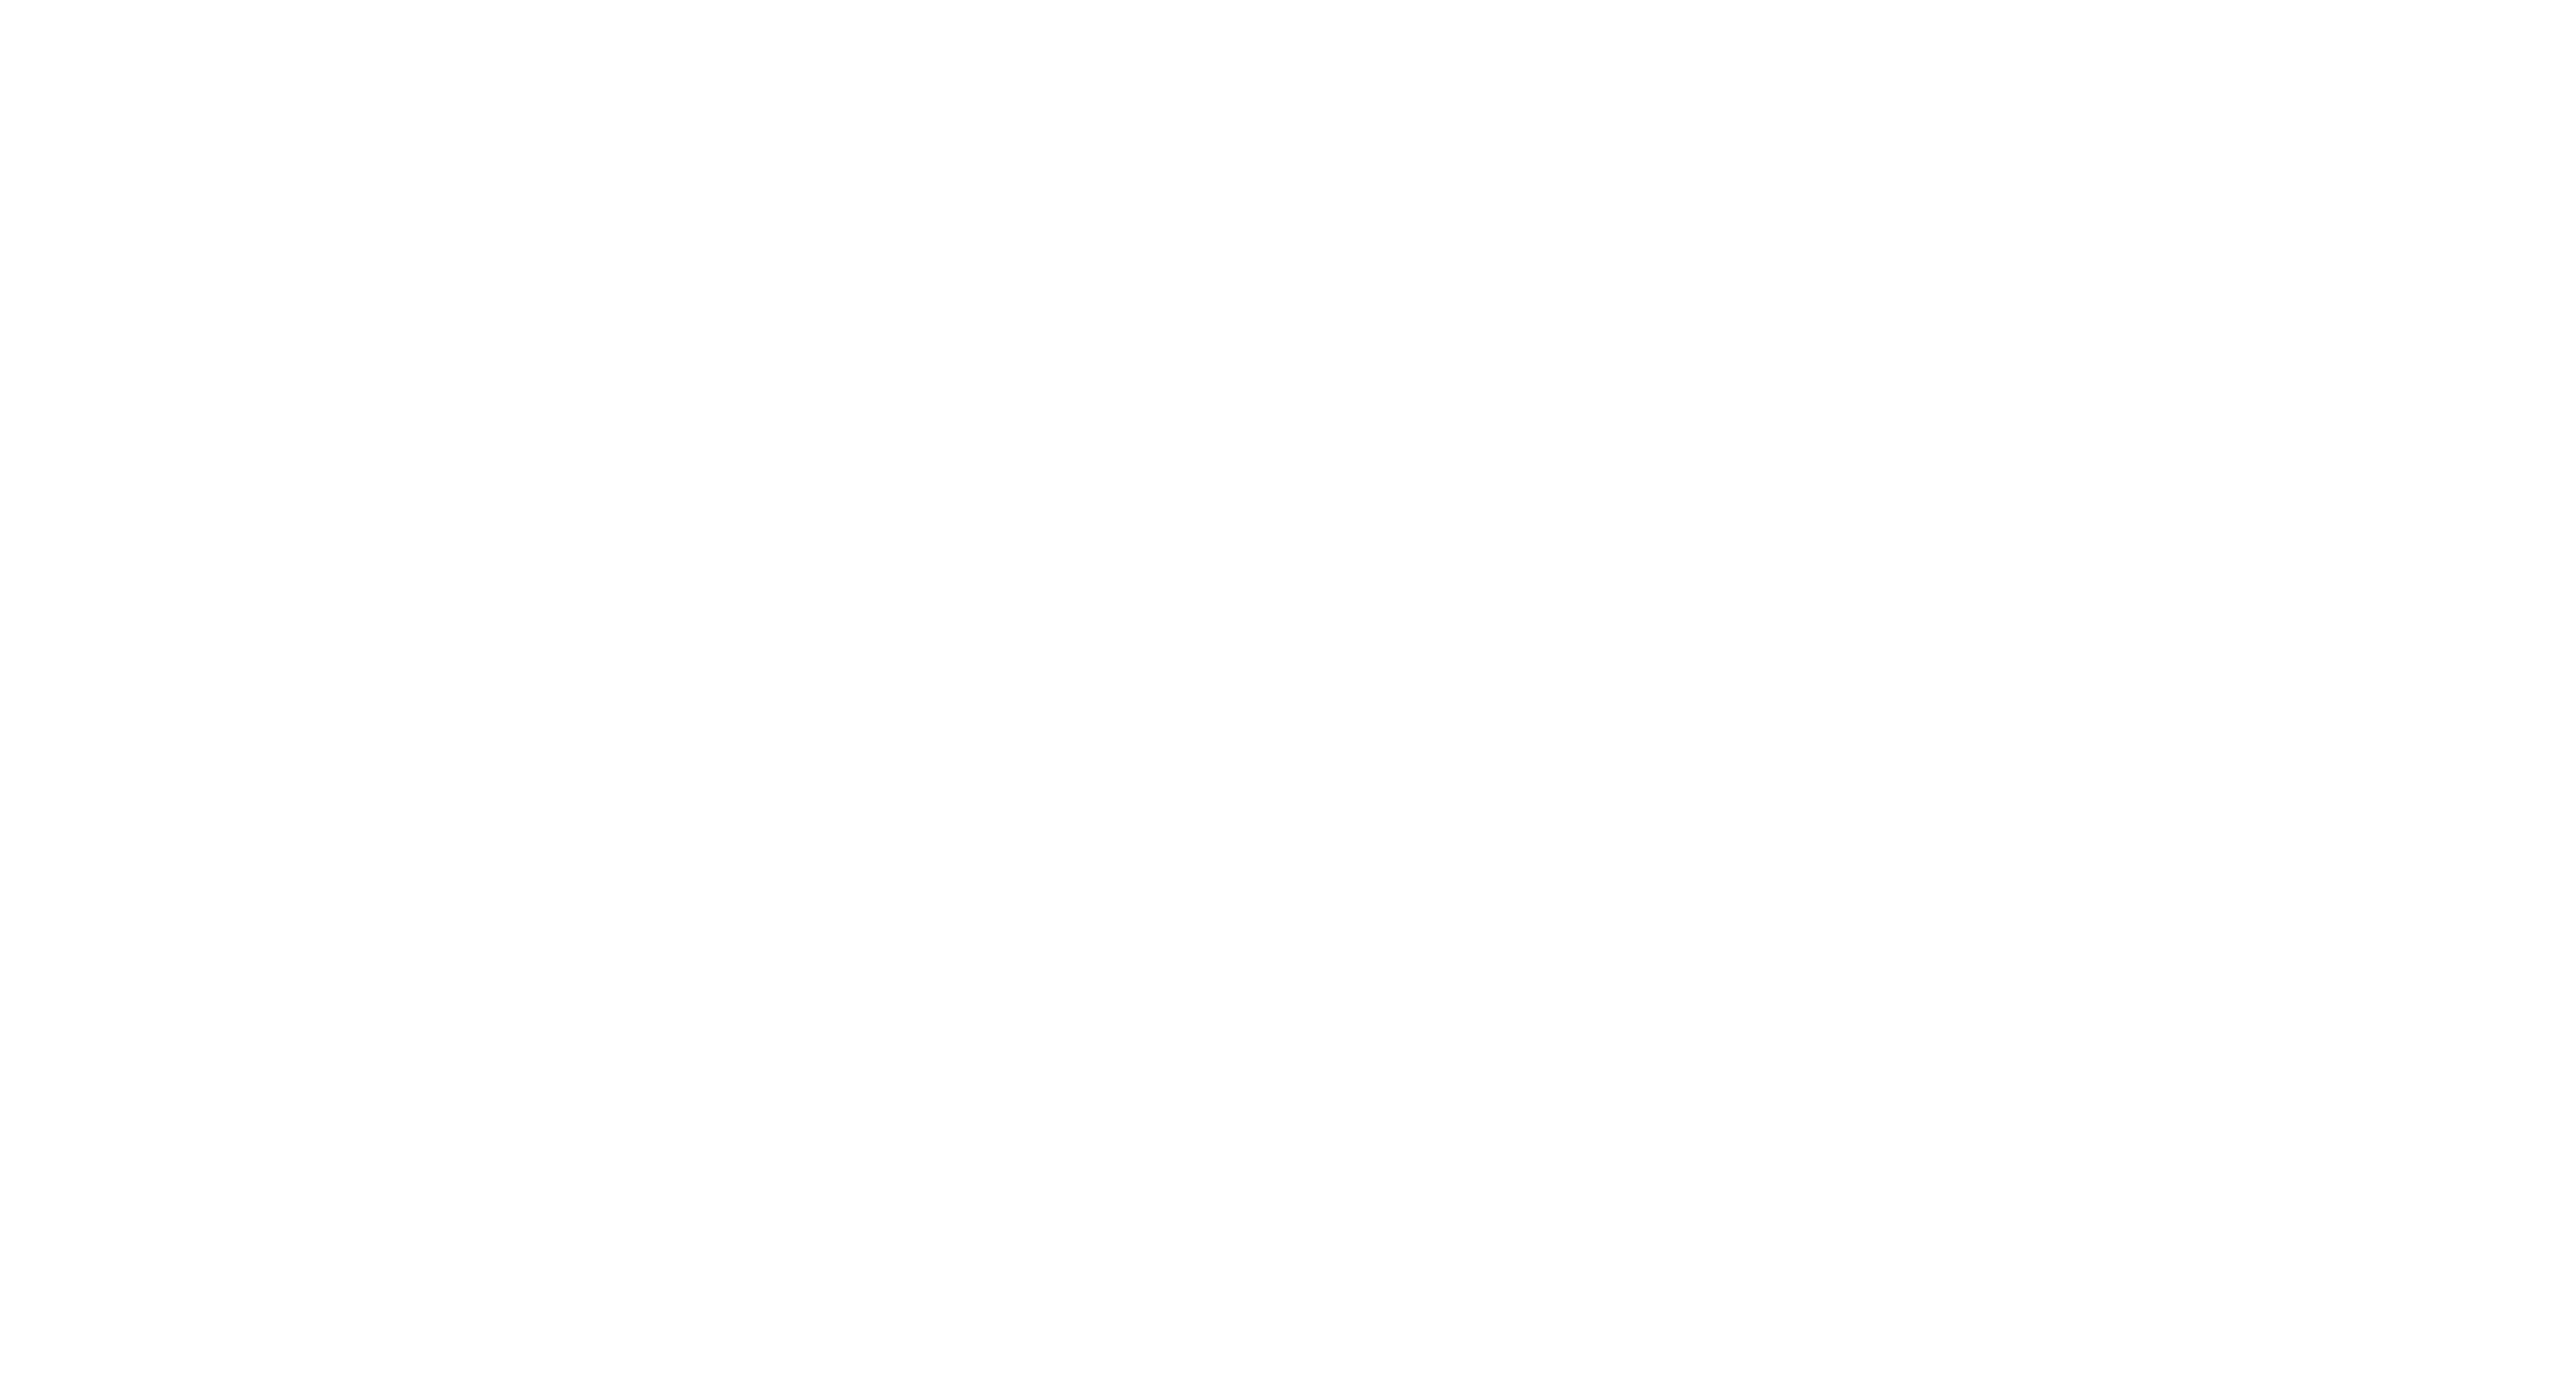 Ethisphere Assessment Portal logo